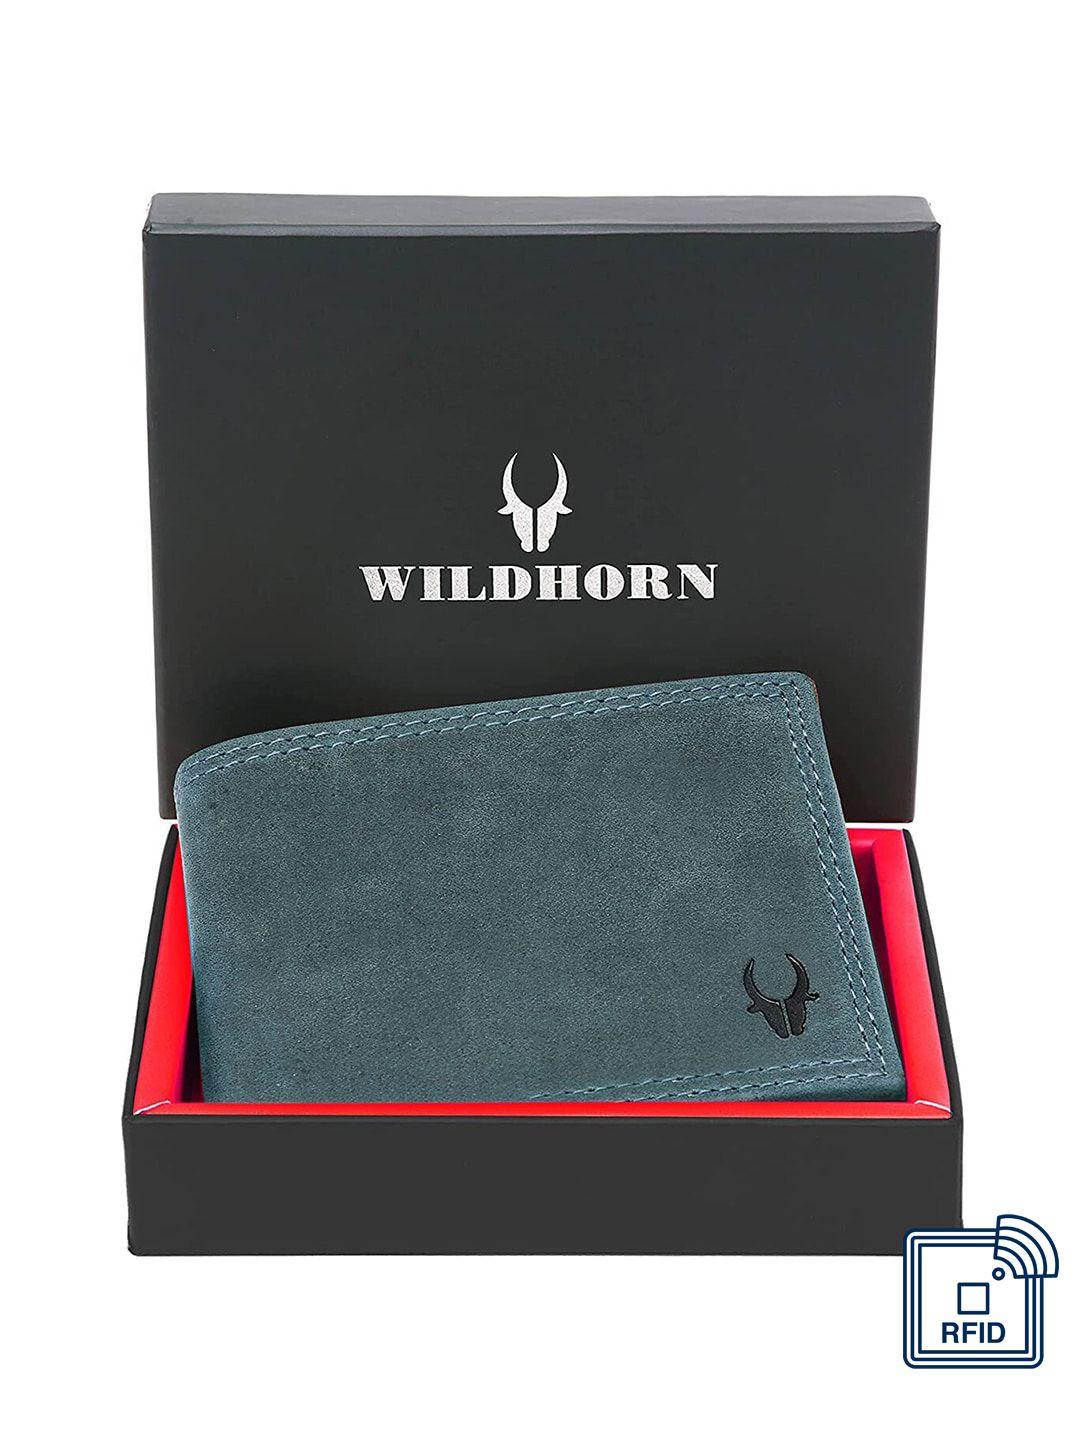 wildhorn men leather two fold wallet